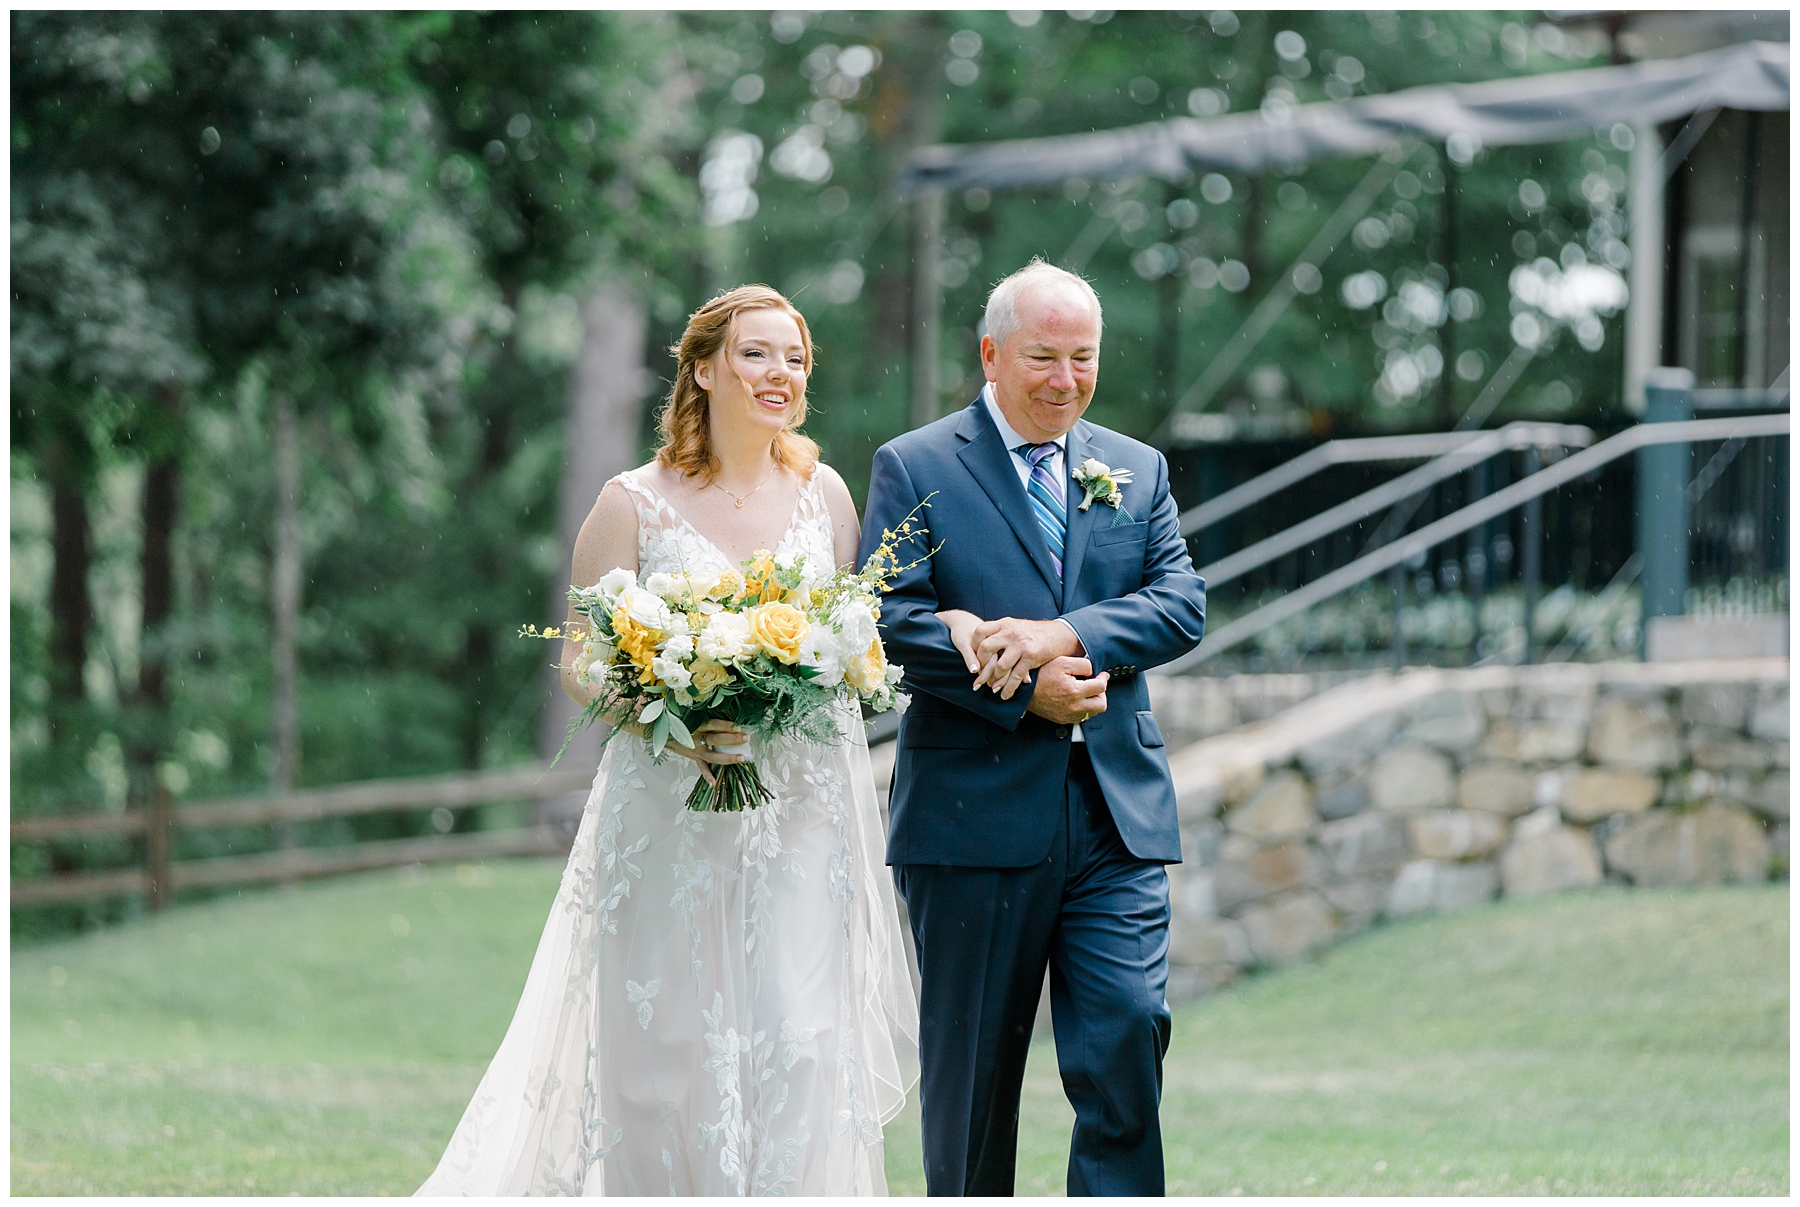 dad walks bride to ceremony